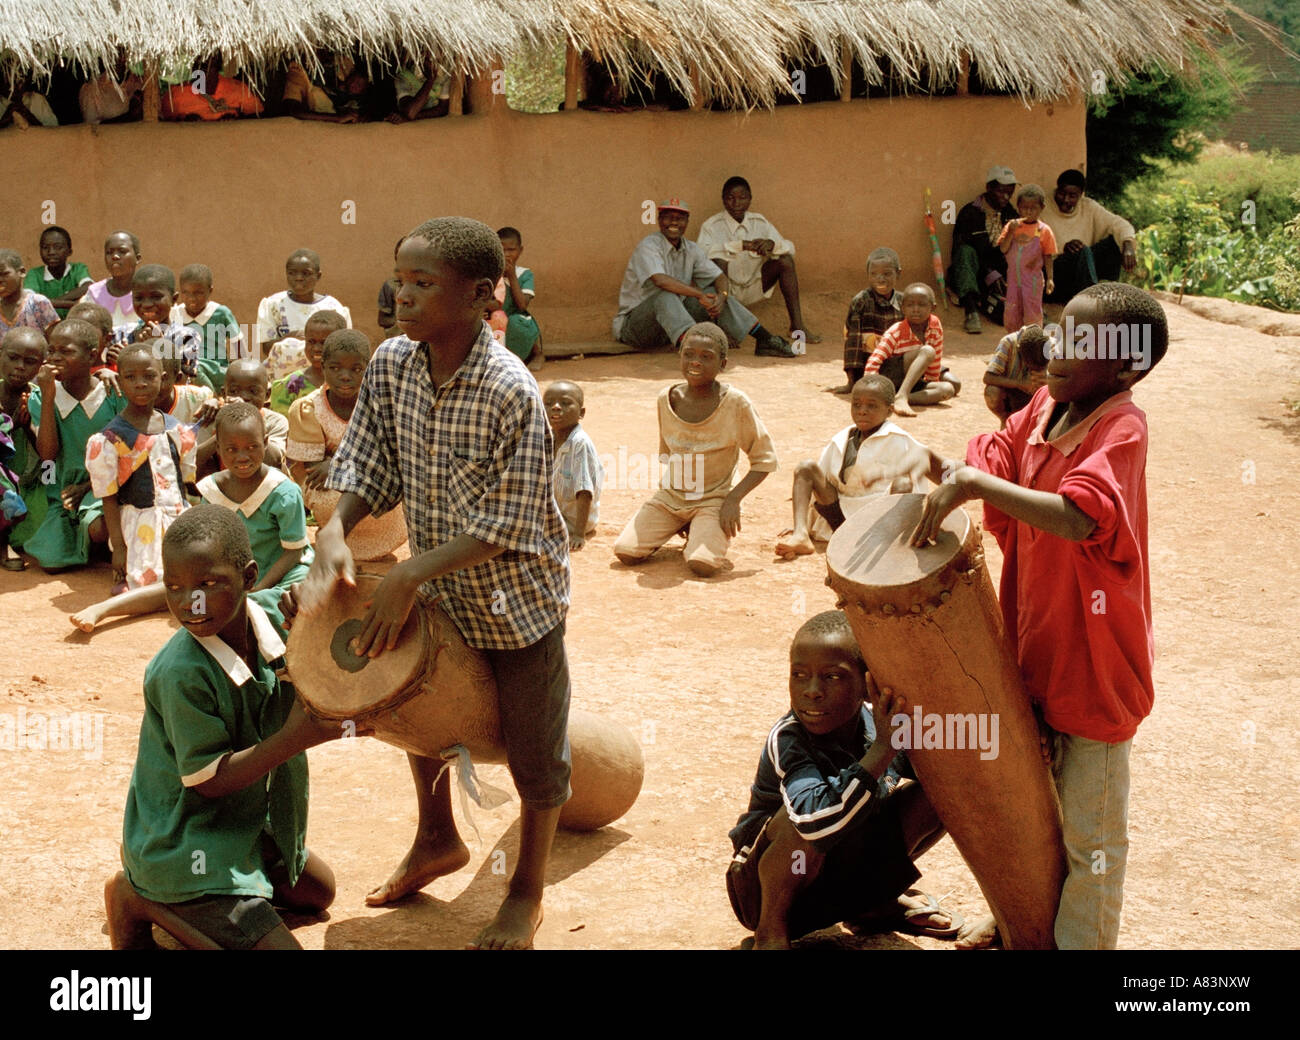 Bambini locali giocare i tamburi di bongo durante un gioco tradizionale di fronte al villaggio, Malawi, Africa orientale. Foto Stock